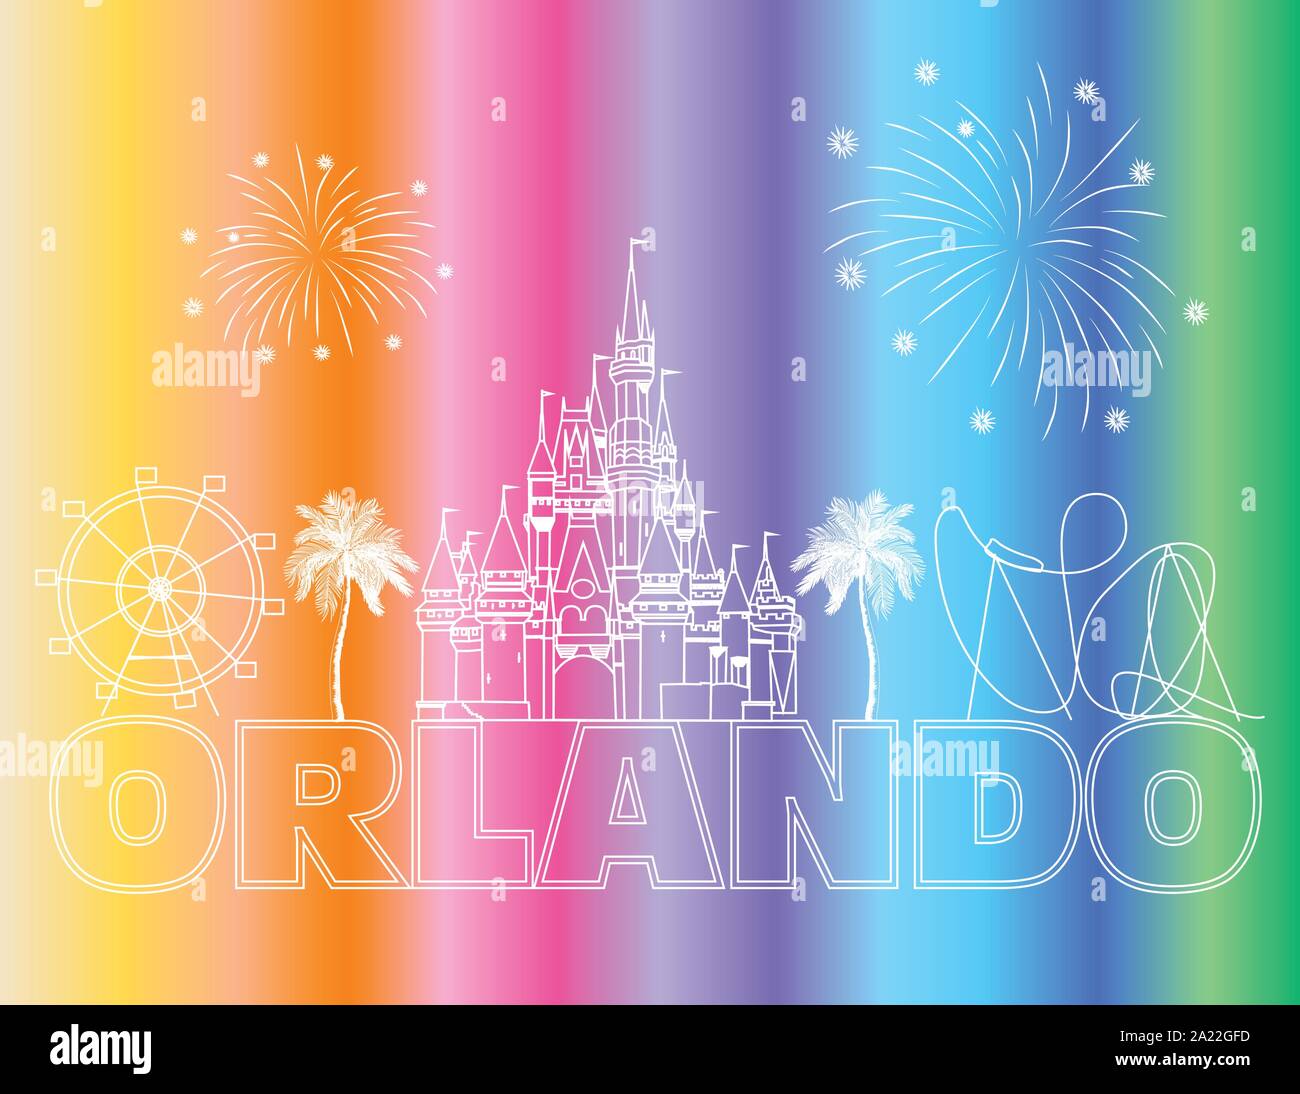 Orlando weisser Schrift auf farbigen Hintergrund. Vektor mit Reisen Symbole und Feuerwerk. Reisen Postkarte. Stock Vektor